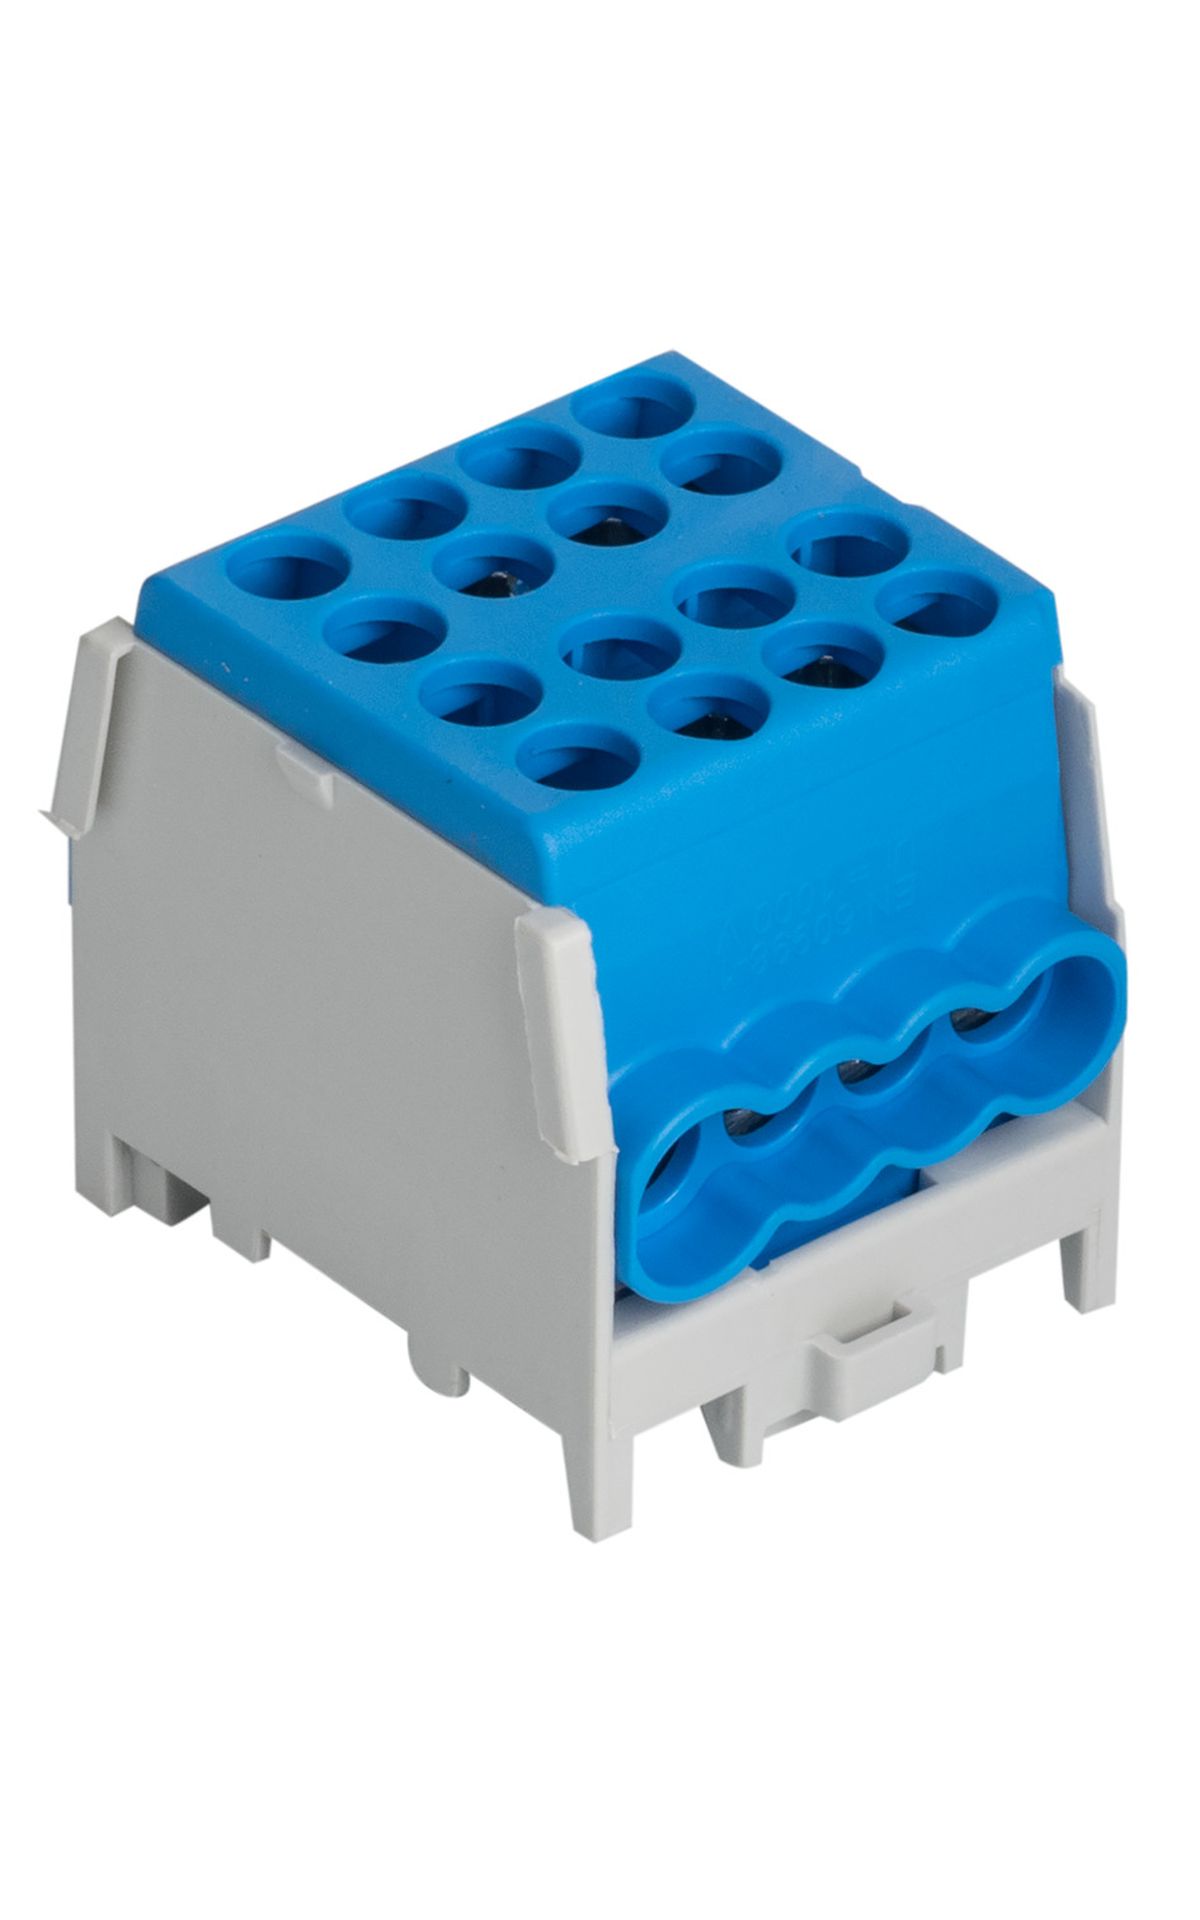 Minimodular HLAK 25-1/6 M2 fővezeték soroló elem kék